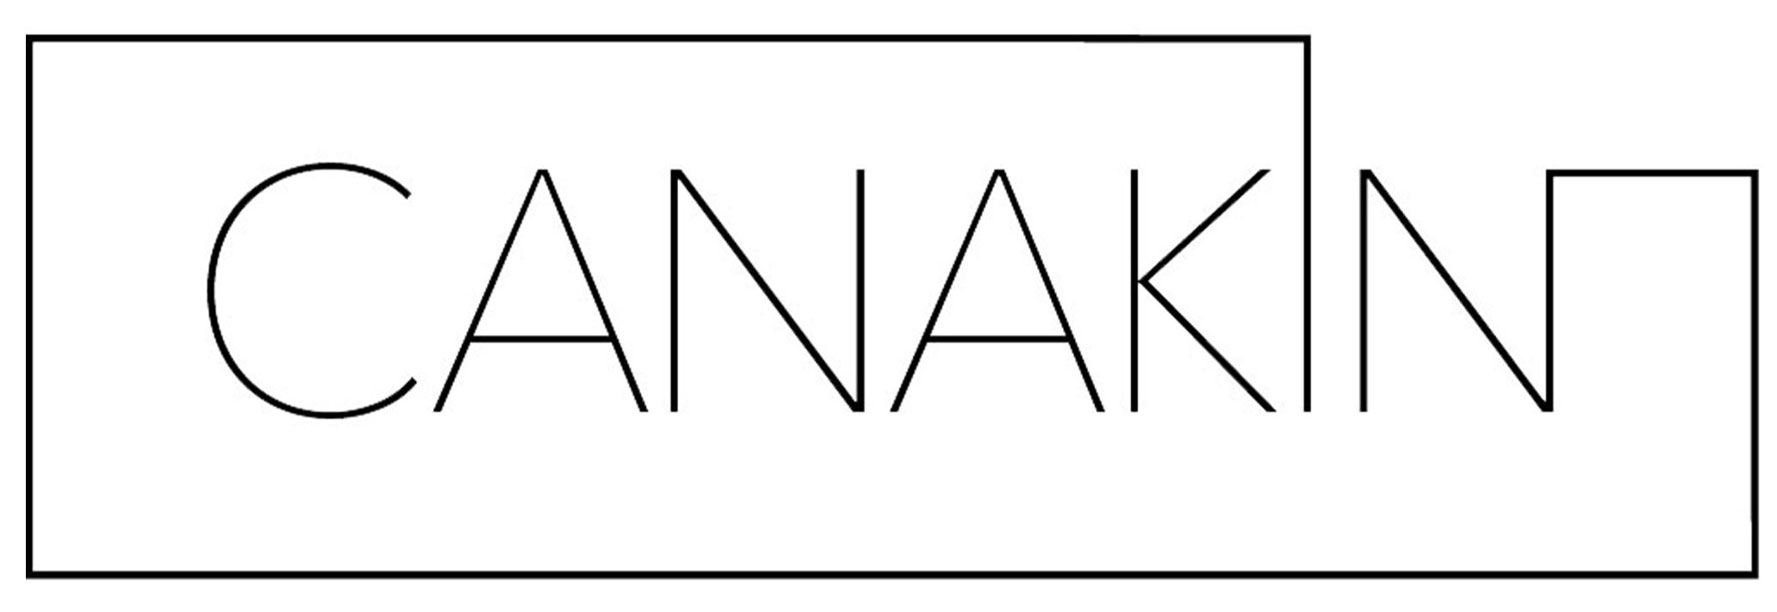 Canakin-logo.jpg